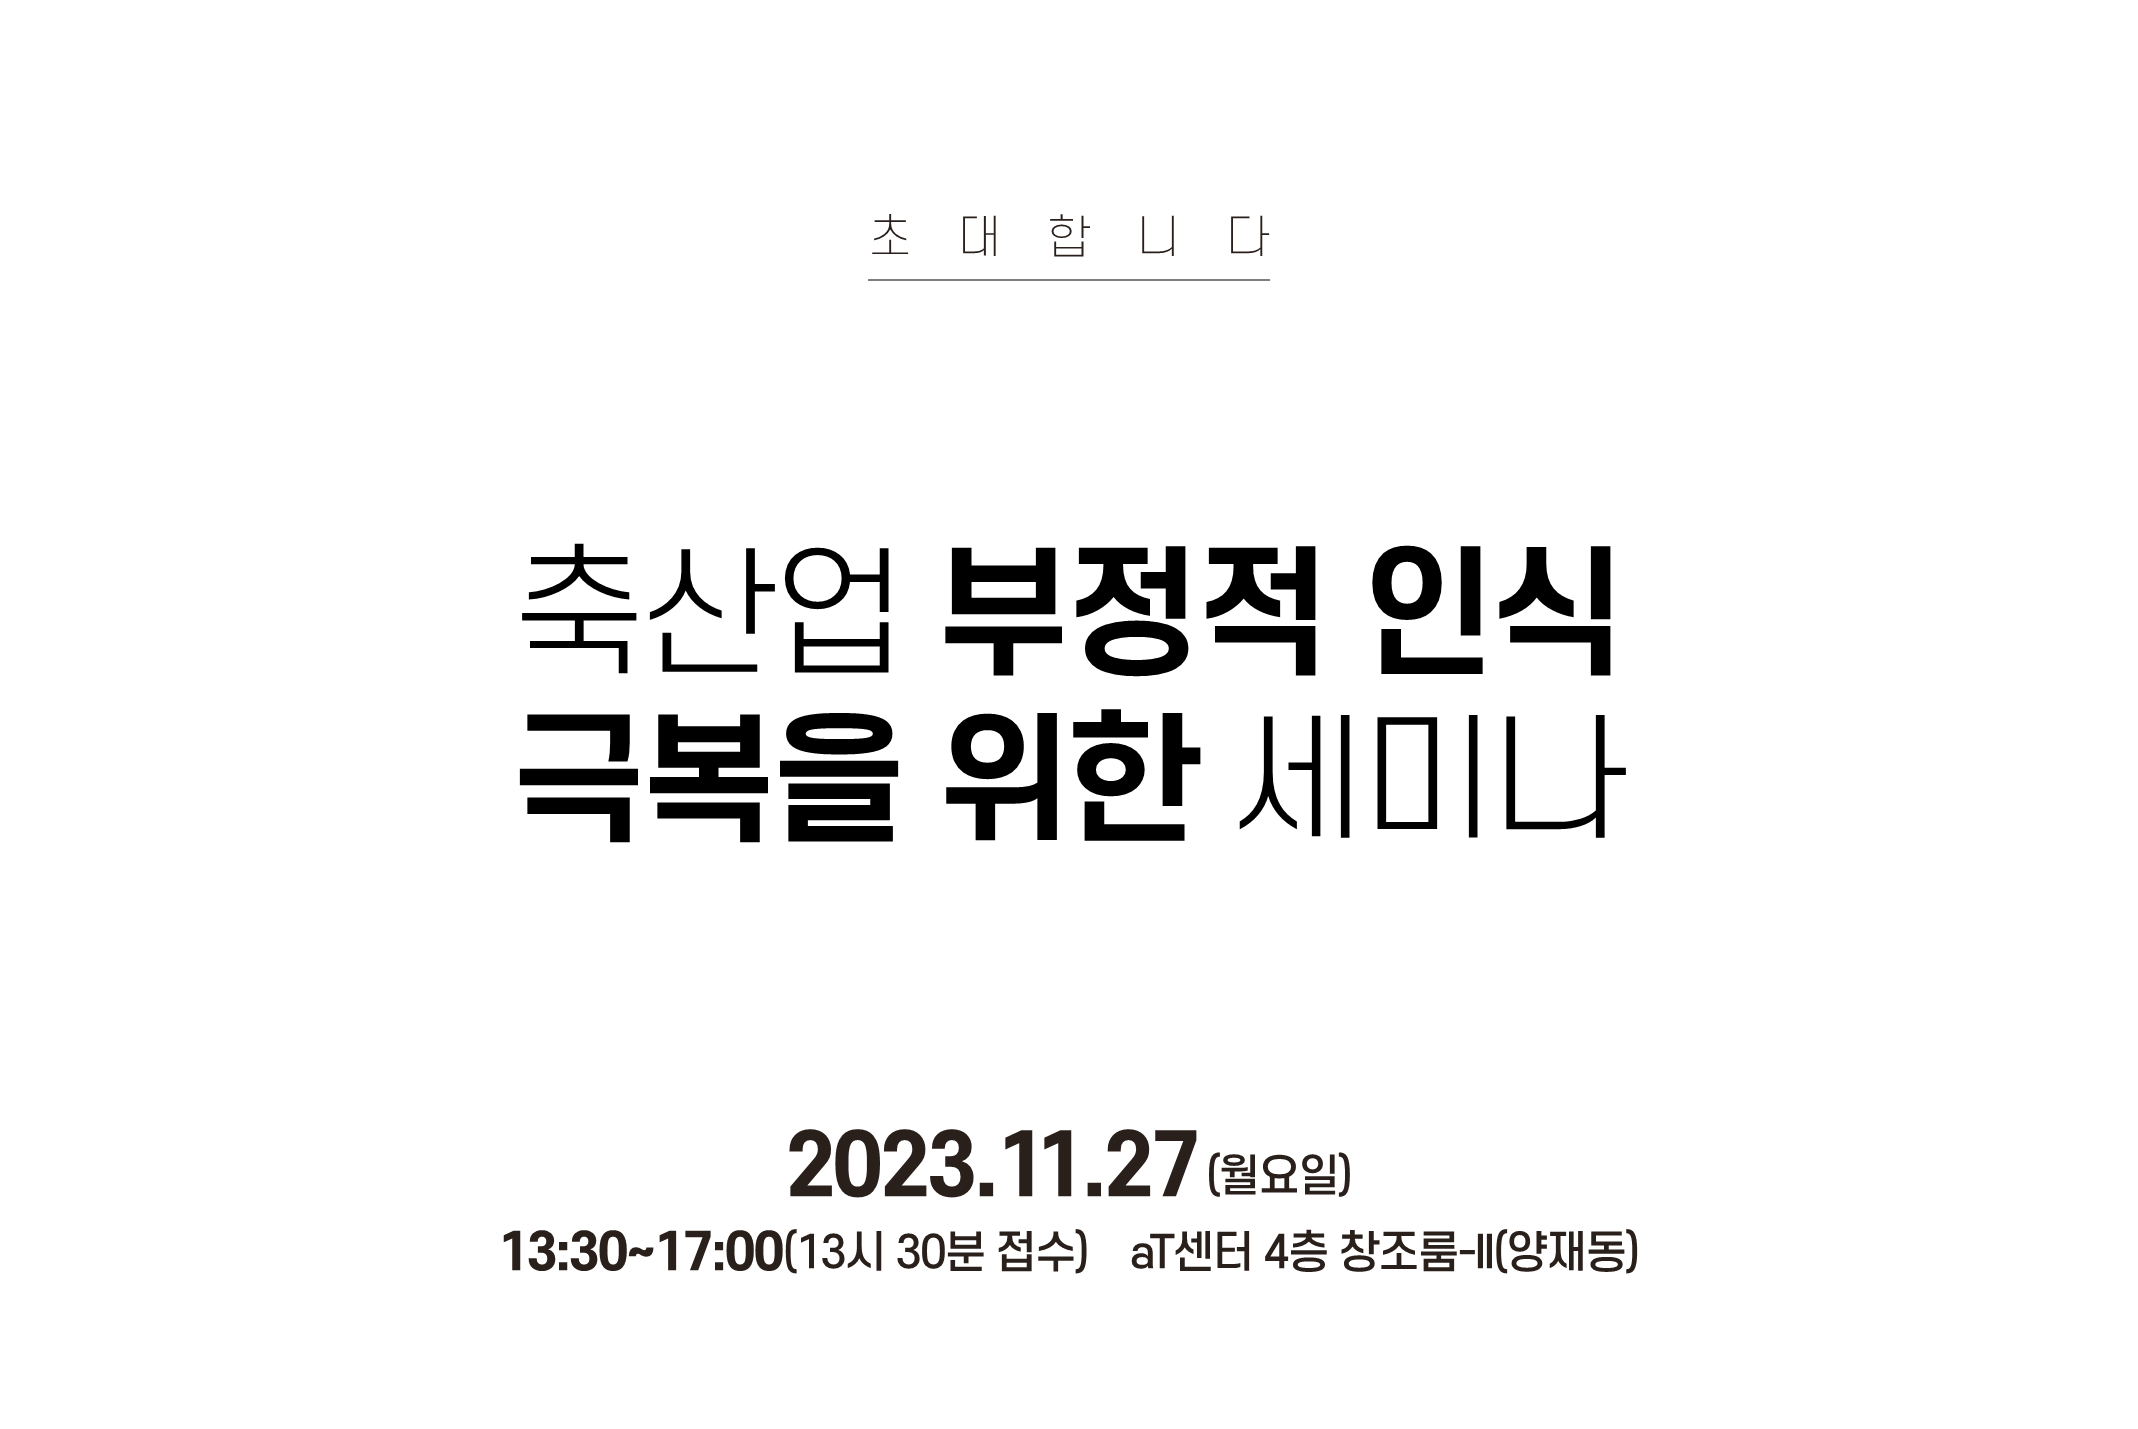 [안내] 축산업 부정적 인식극복을 위한 세미나 11/27(월) aT센터 4층 창조룸 개최 안내